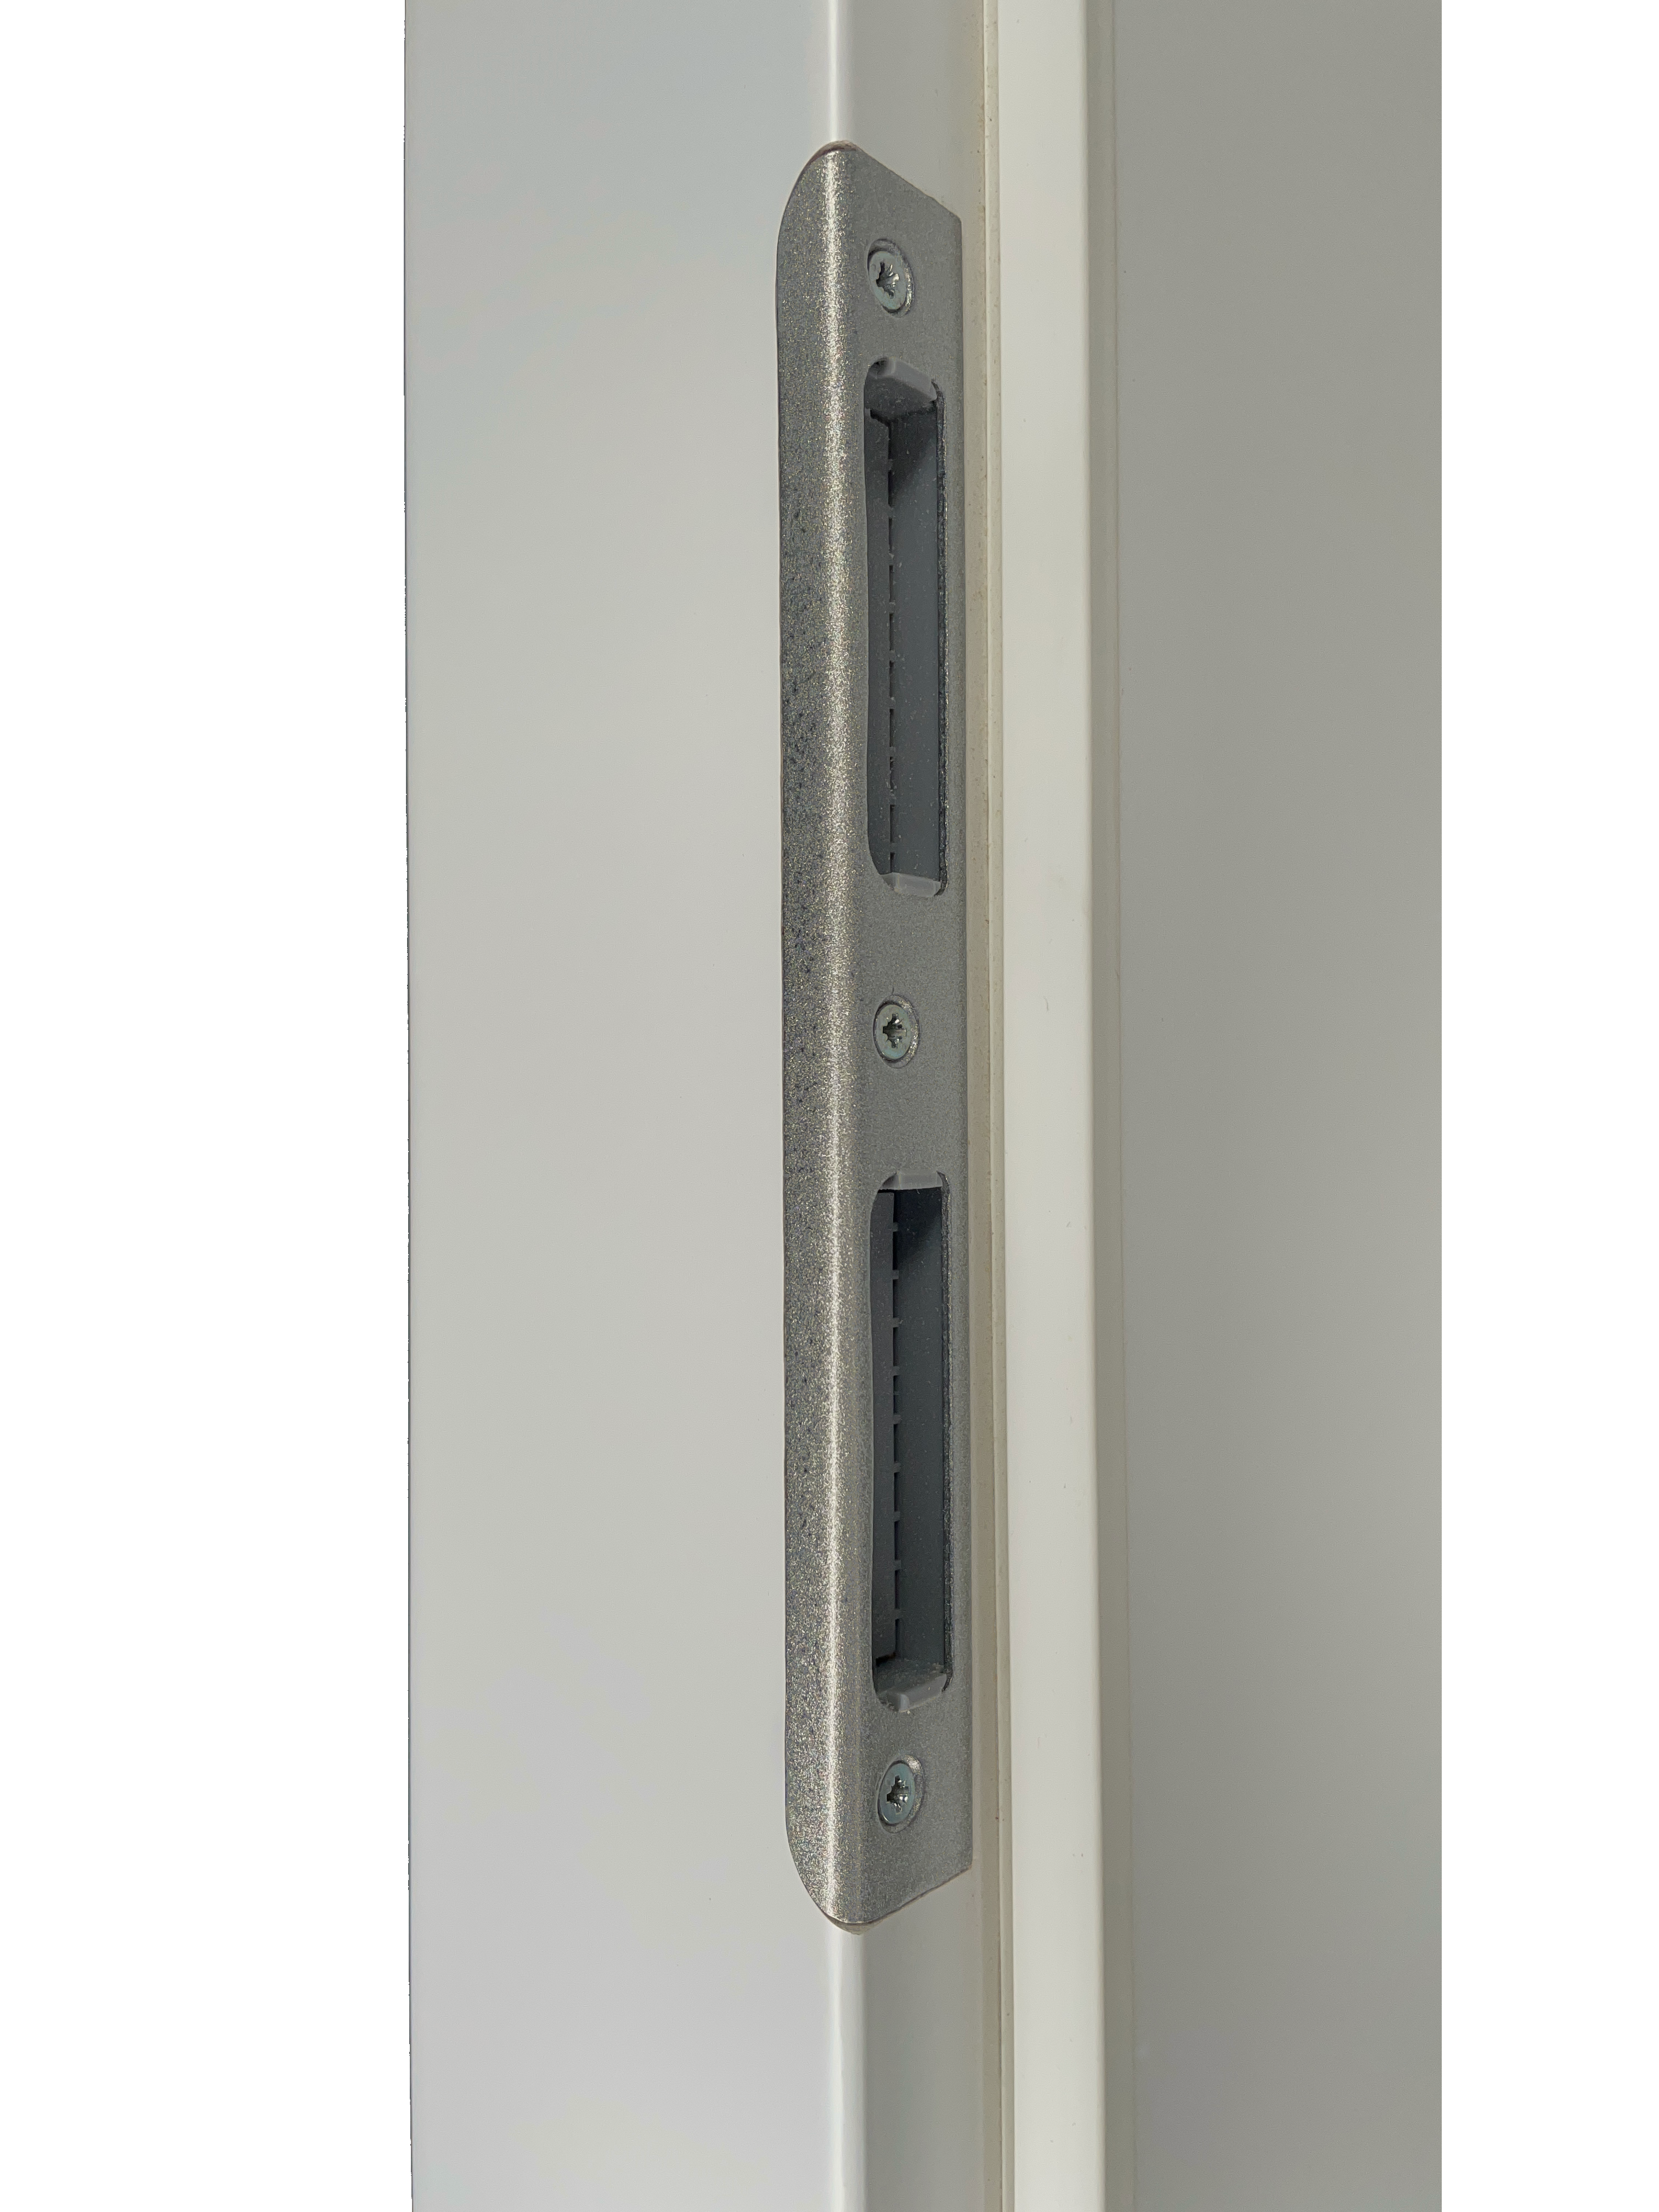 Zimmertür mit Zarge und Lichtausschnitt mit Sprossenrahmen klassisch soft-weiß 2 Kassetten Eckkante - Modell Stiltür K21LASPK